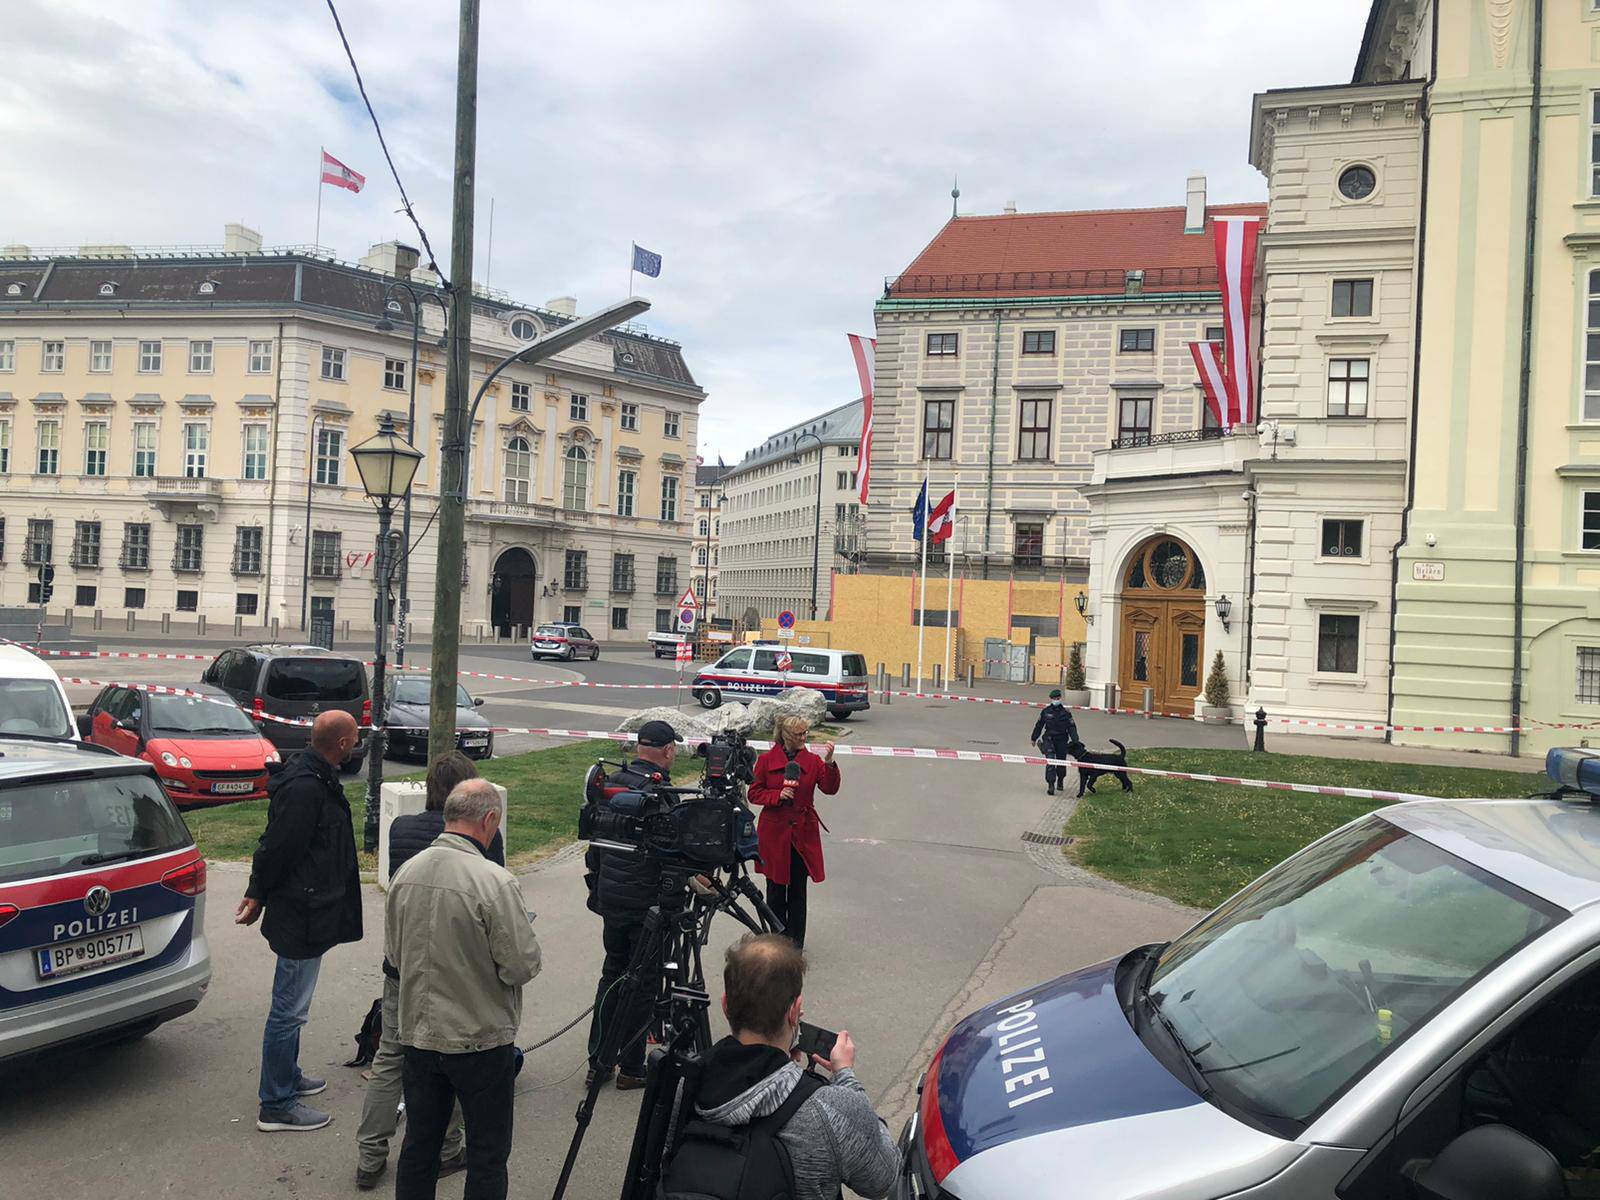 Nakon mačete, bomba: Dojava ispraznila parlament u Beču